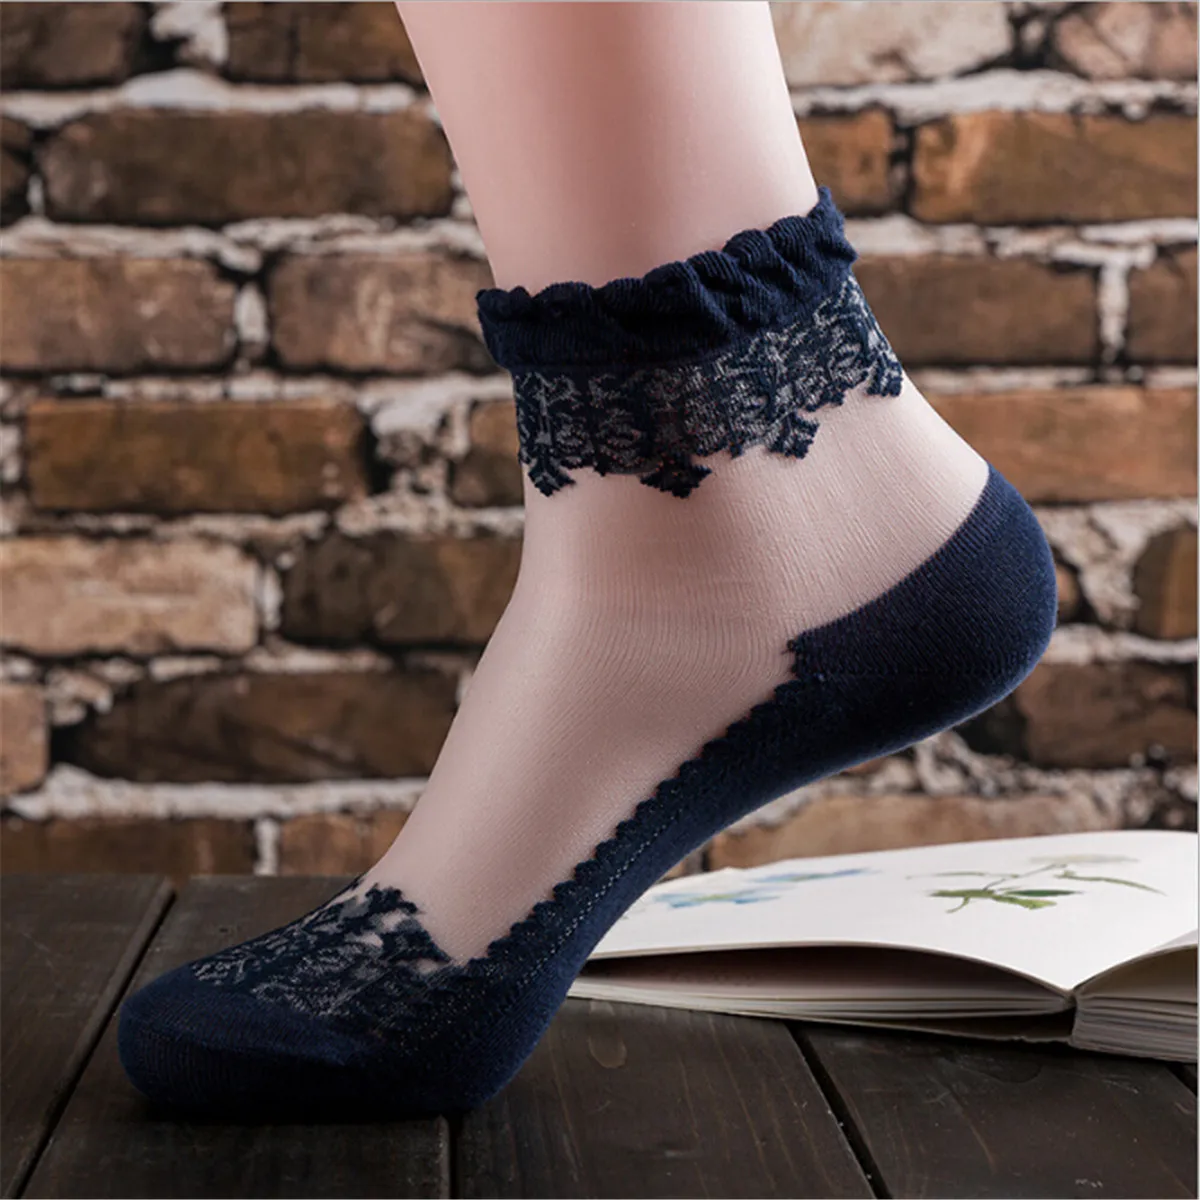 New Women Lady Girls Ankle Fancy Retro Lace Ruffle Frilly School Short Socks